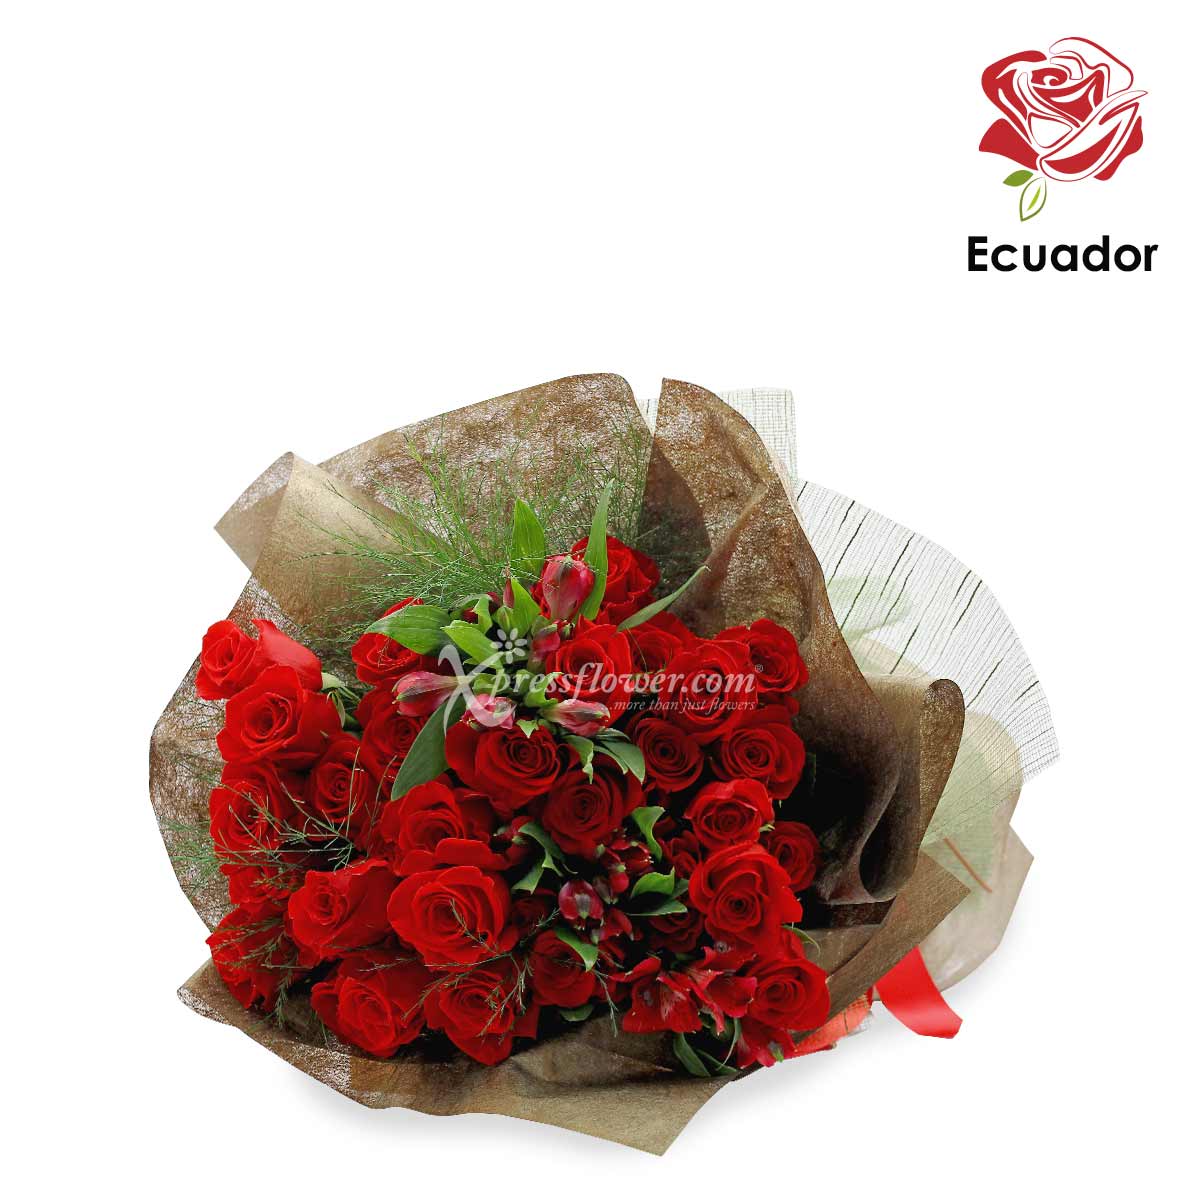 Golden Tiara (36 stalks Premium Ecuador Red Roses)